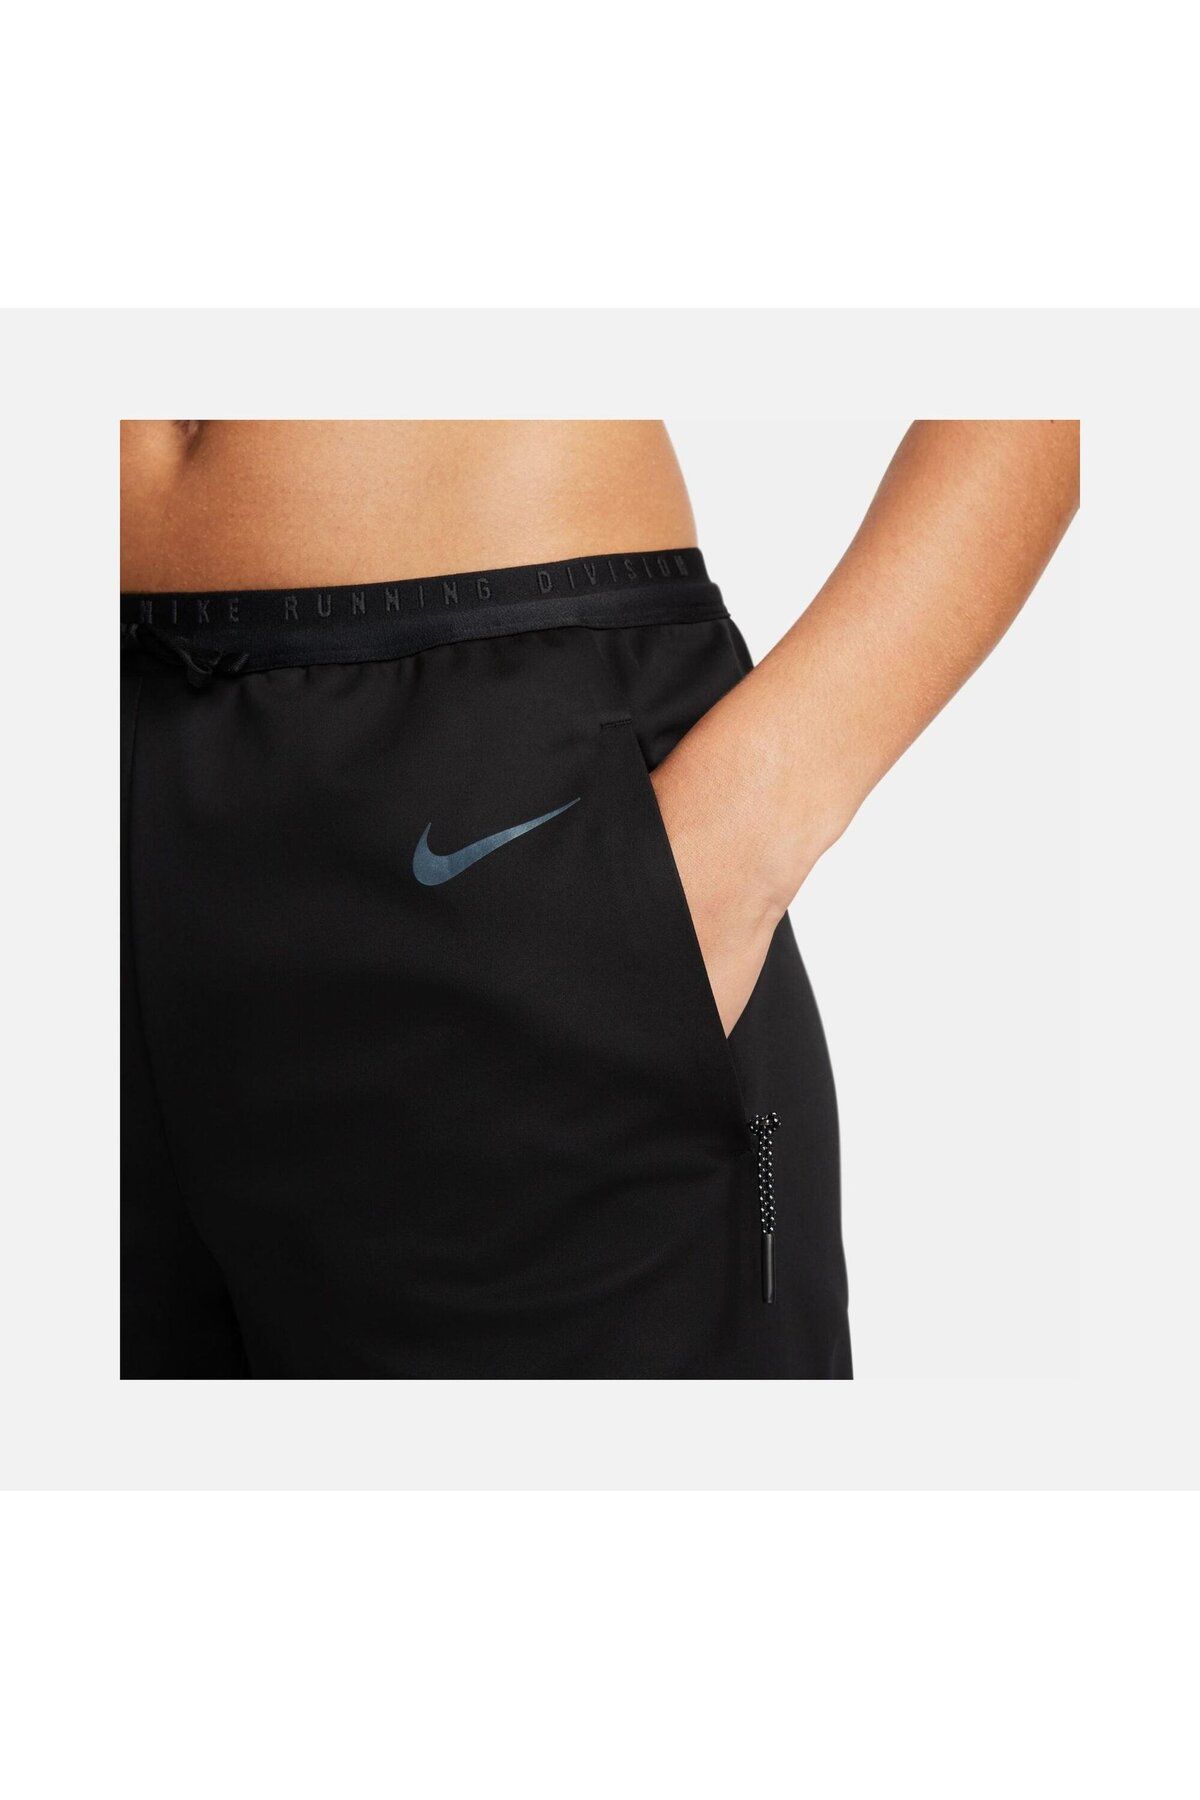 Nike Sports Sweatpants - Beige - Normal Waist - Trendyol